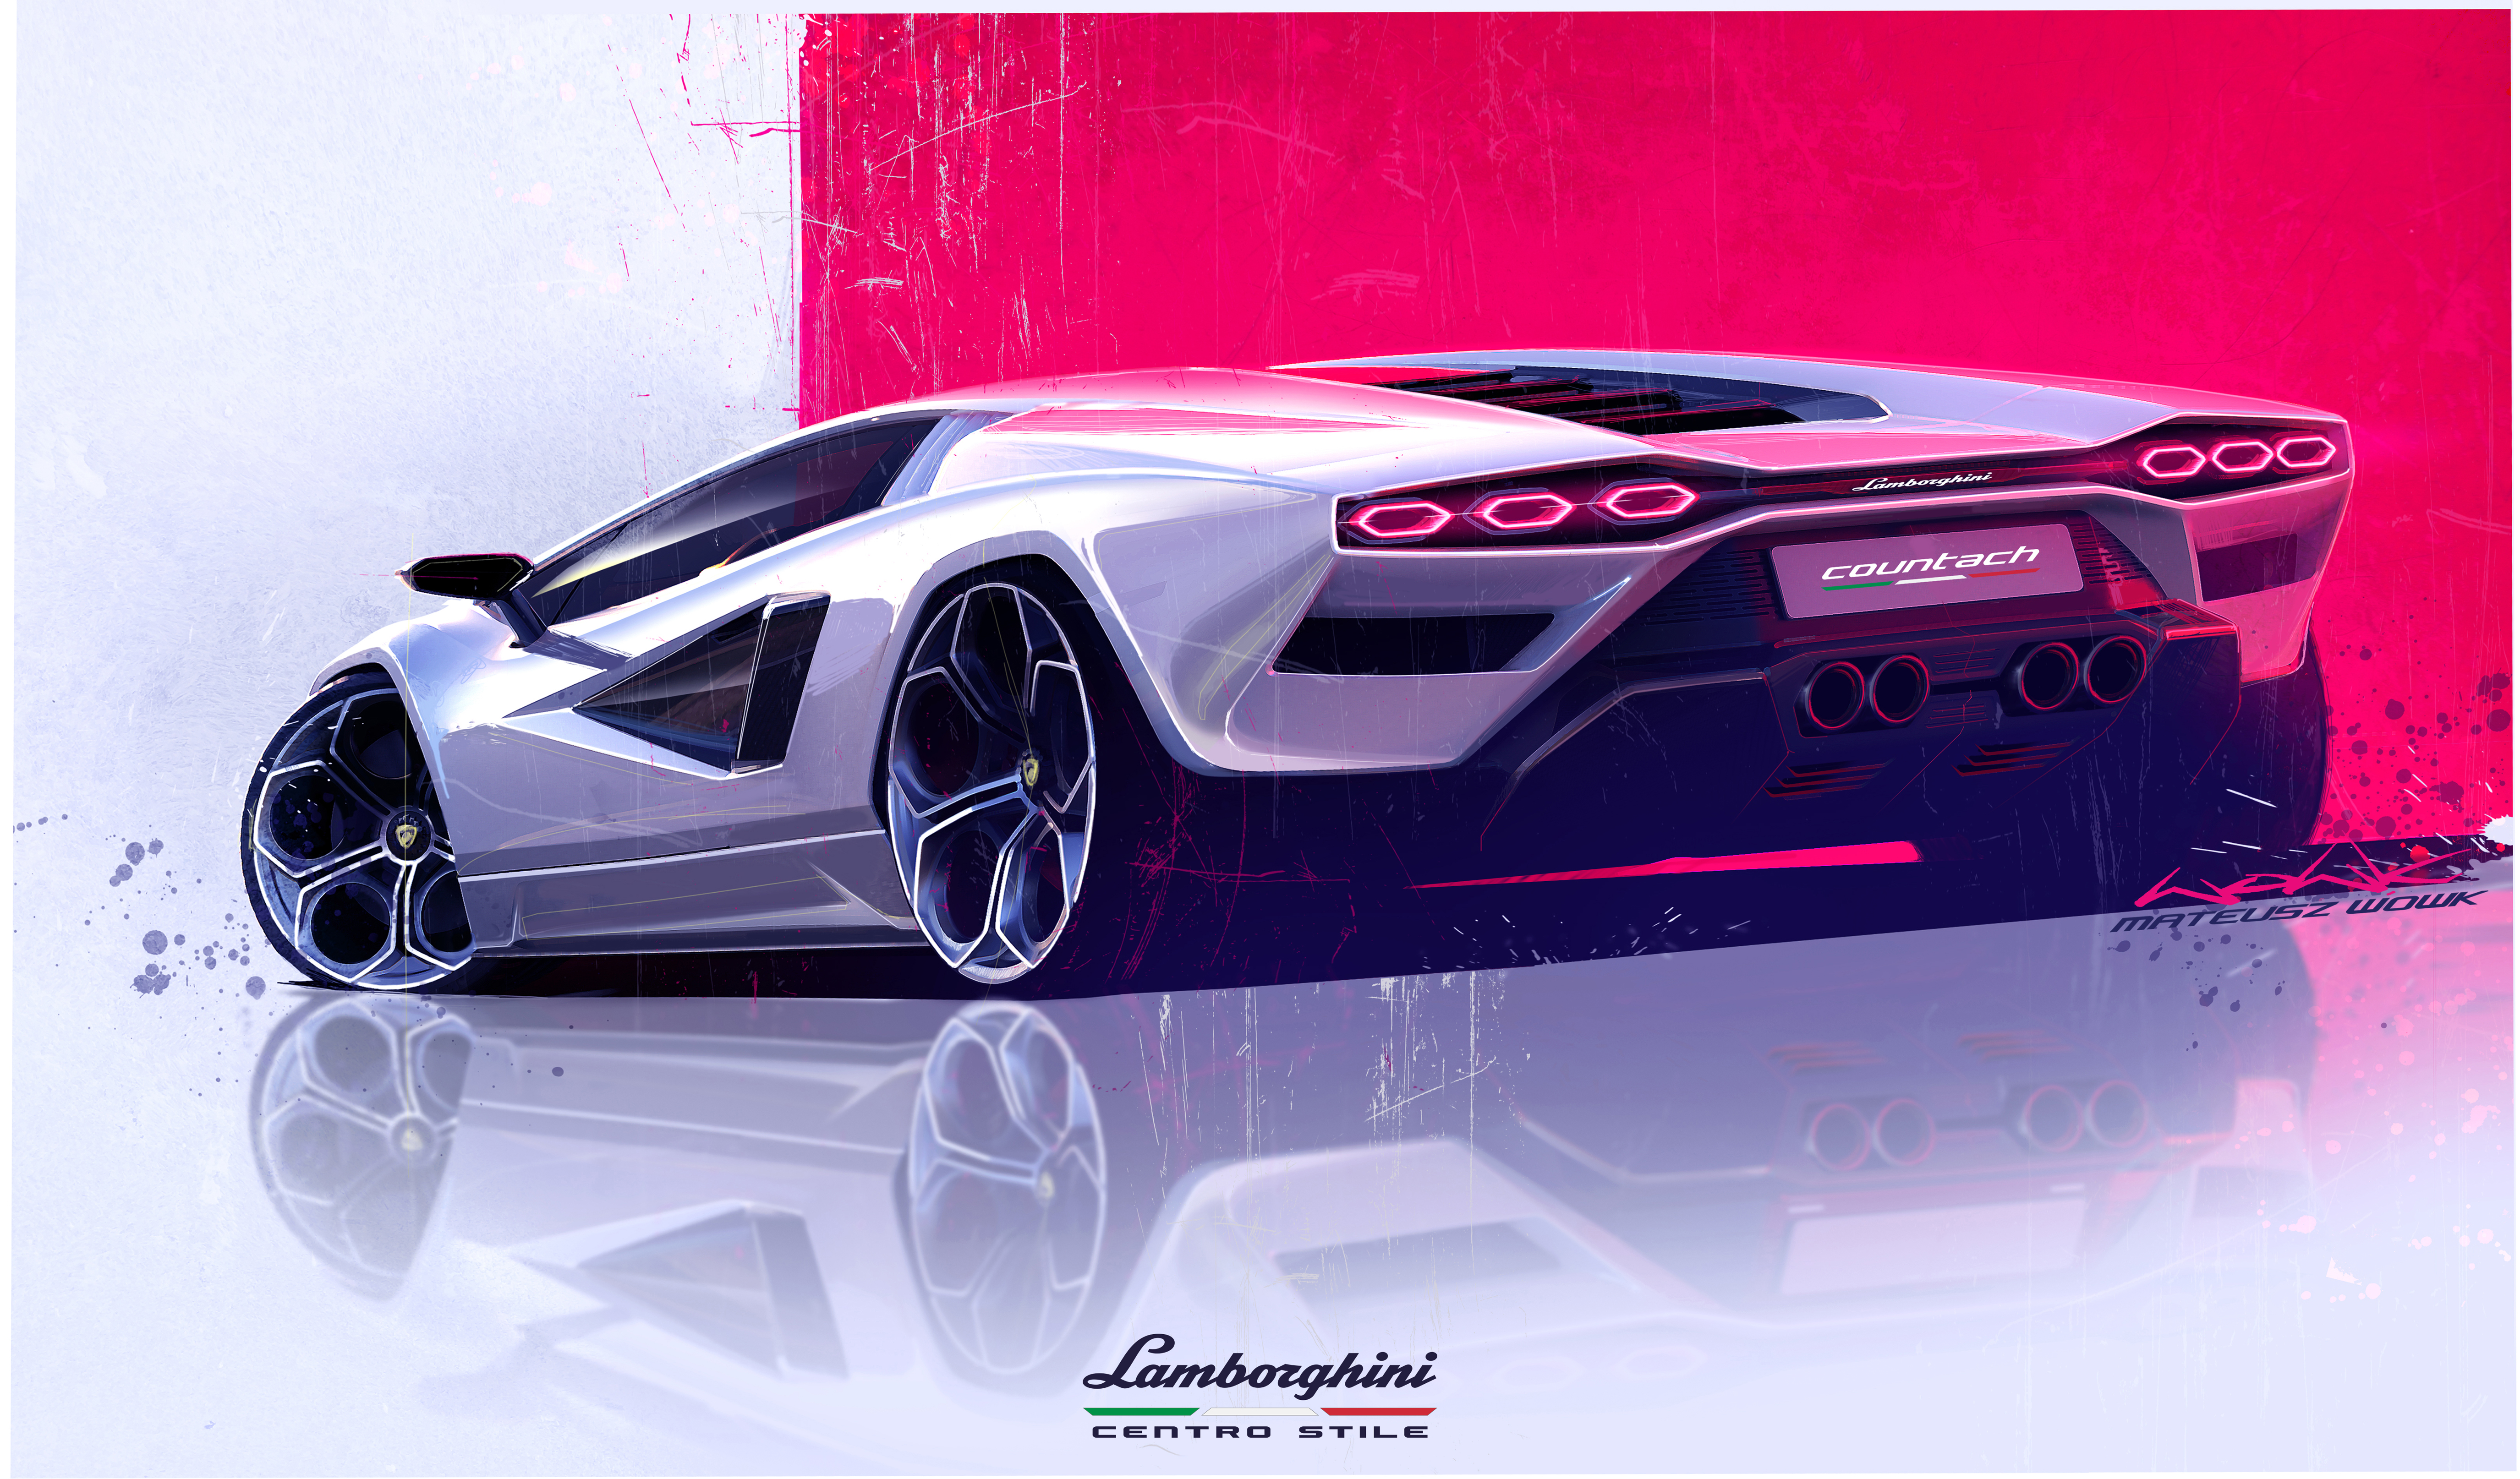 Được giới thiệu vào năm 1974, Lamborghini Countach là một trong những siêu xe huyền thoại của Ý. Với kiểu dáng đột phá và đẳng cấp hoàn hảo, chiếc xe đã quyến rũ giới chơi xe và người hâm mộ trên toàn thế giới. Hãy xem hình ảnh Lamborghini Countach để chiêm ngưỡng vẻ đẹp hoàn hảo của một siêu xe huyền thoại.